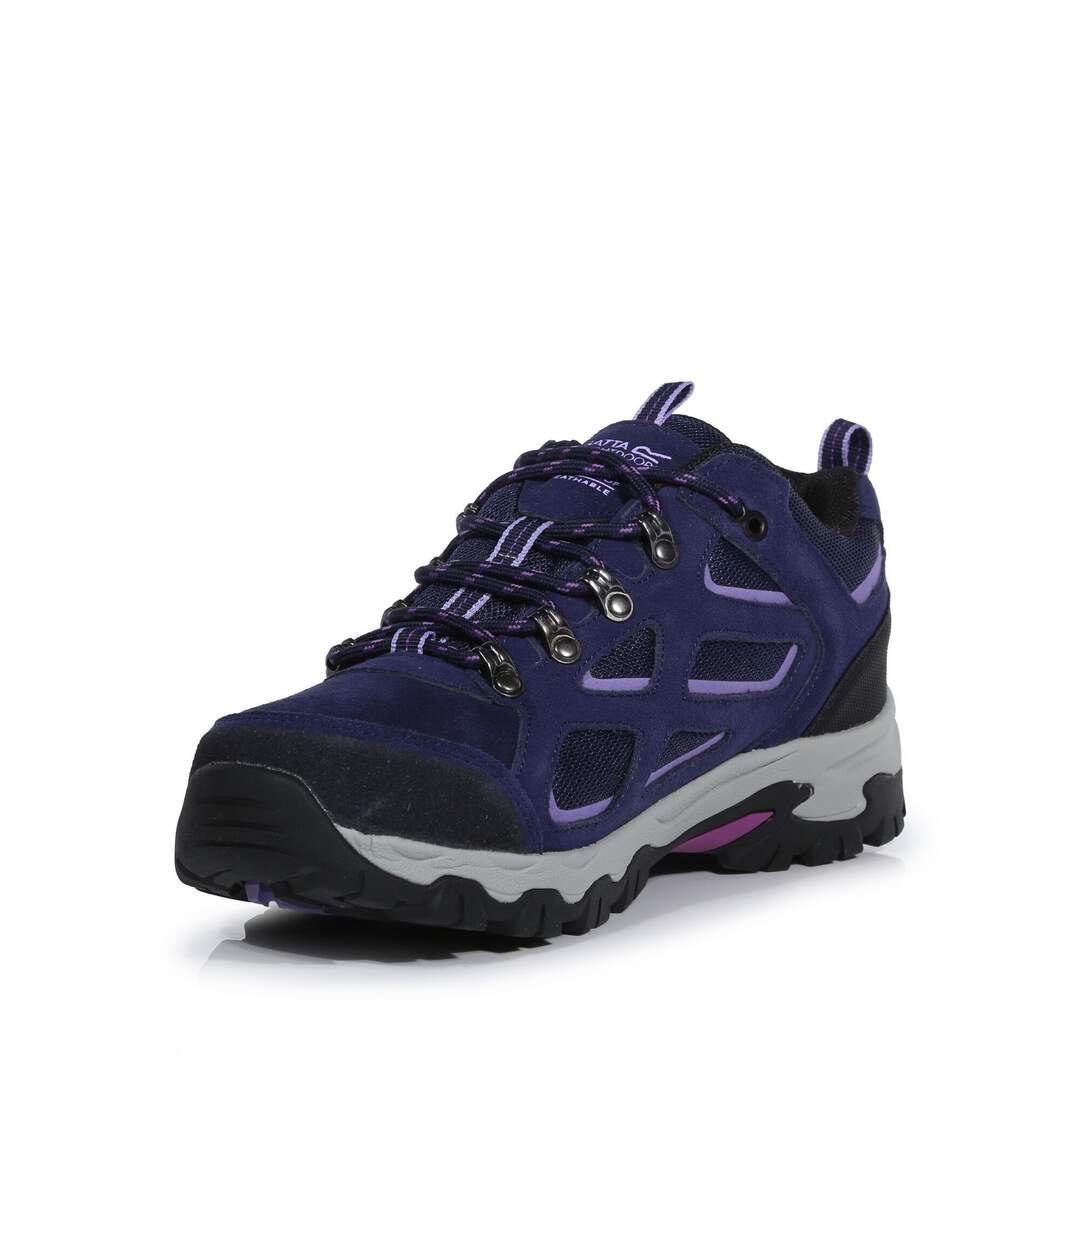 Regatta Womens/Ladies Tebay Waterproof Suede Walking Shoes (Midnight/Lilac Bloom) - UTRG6437